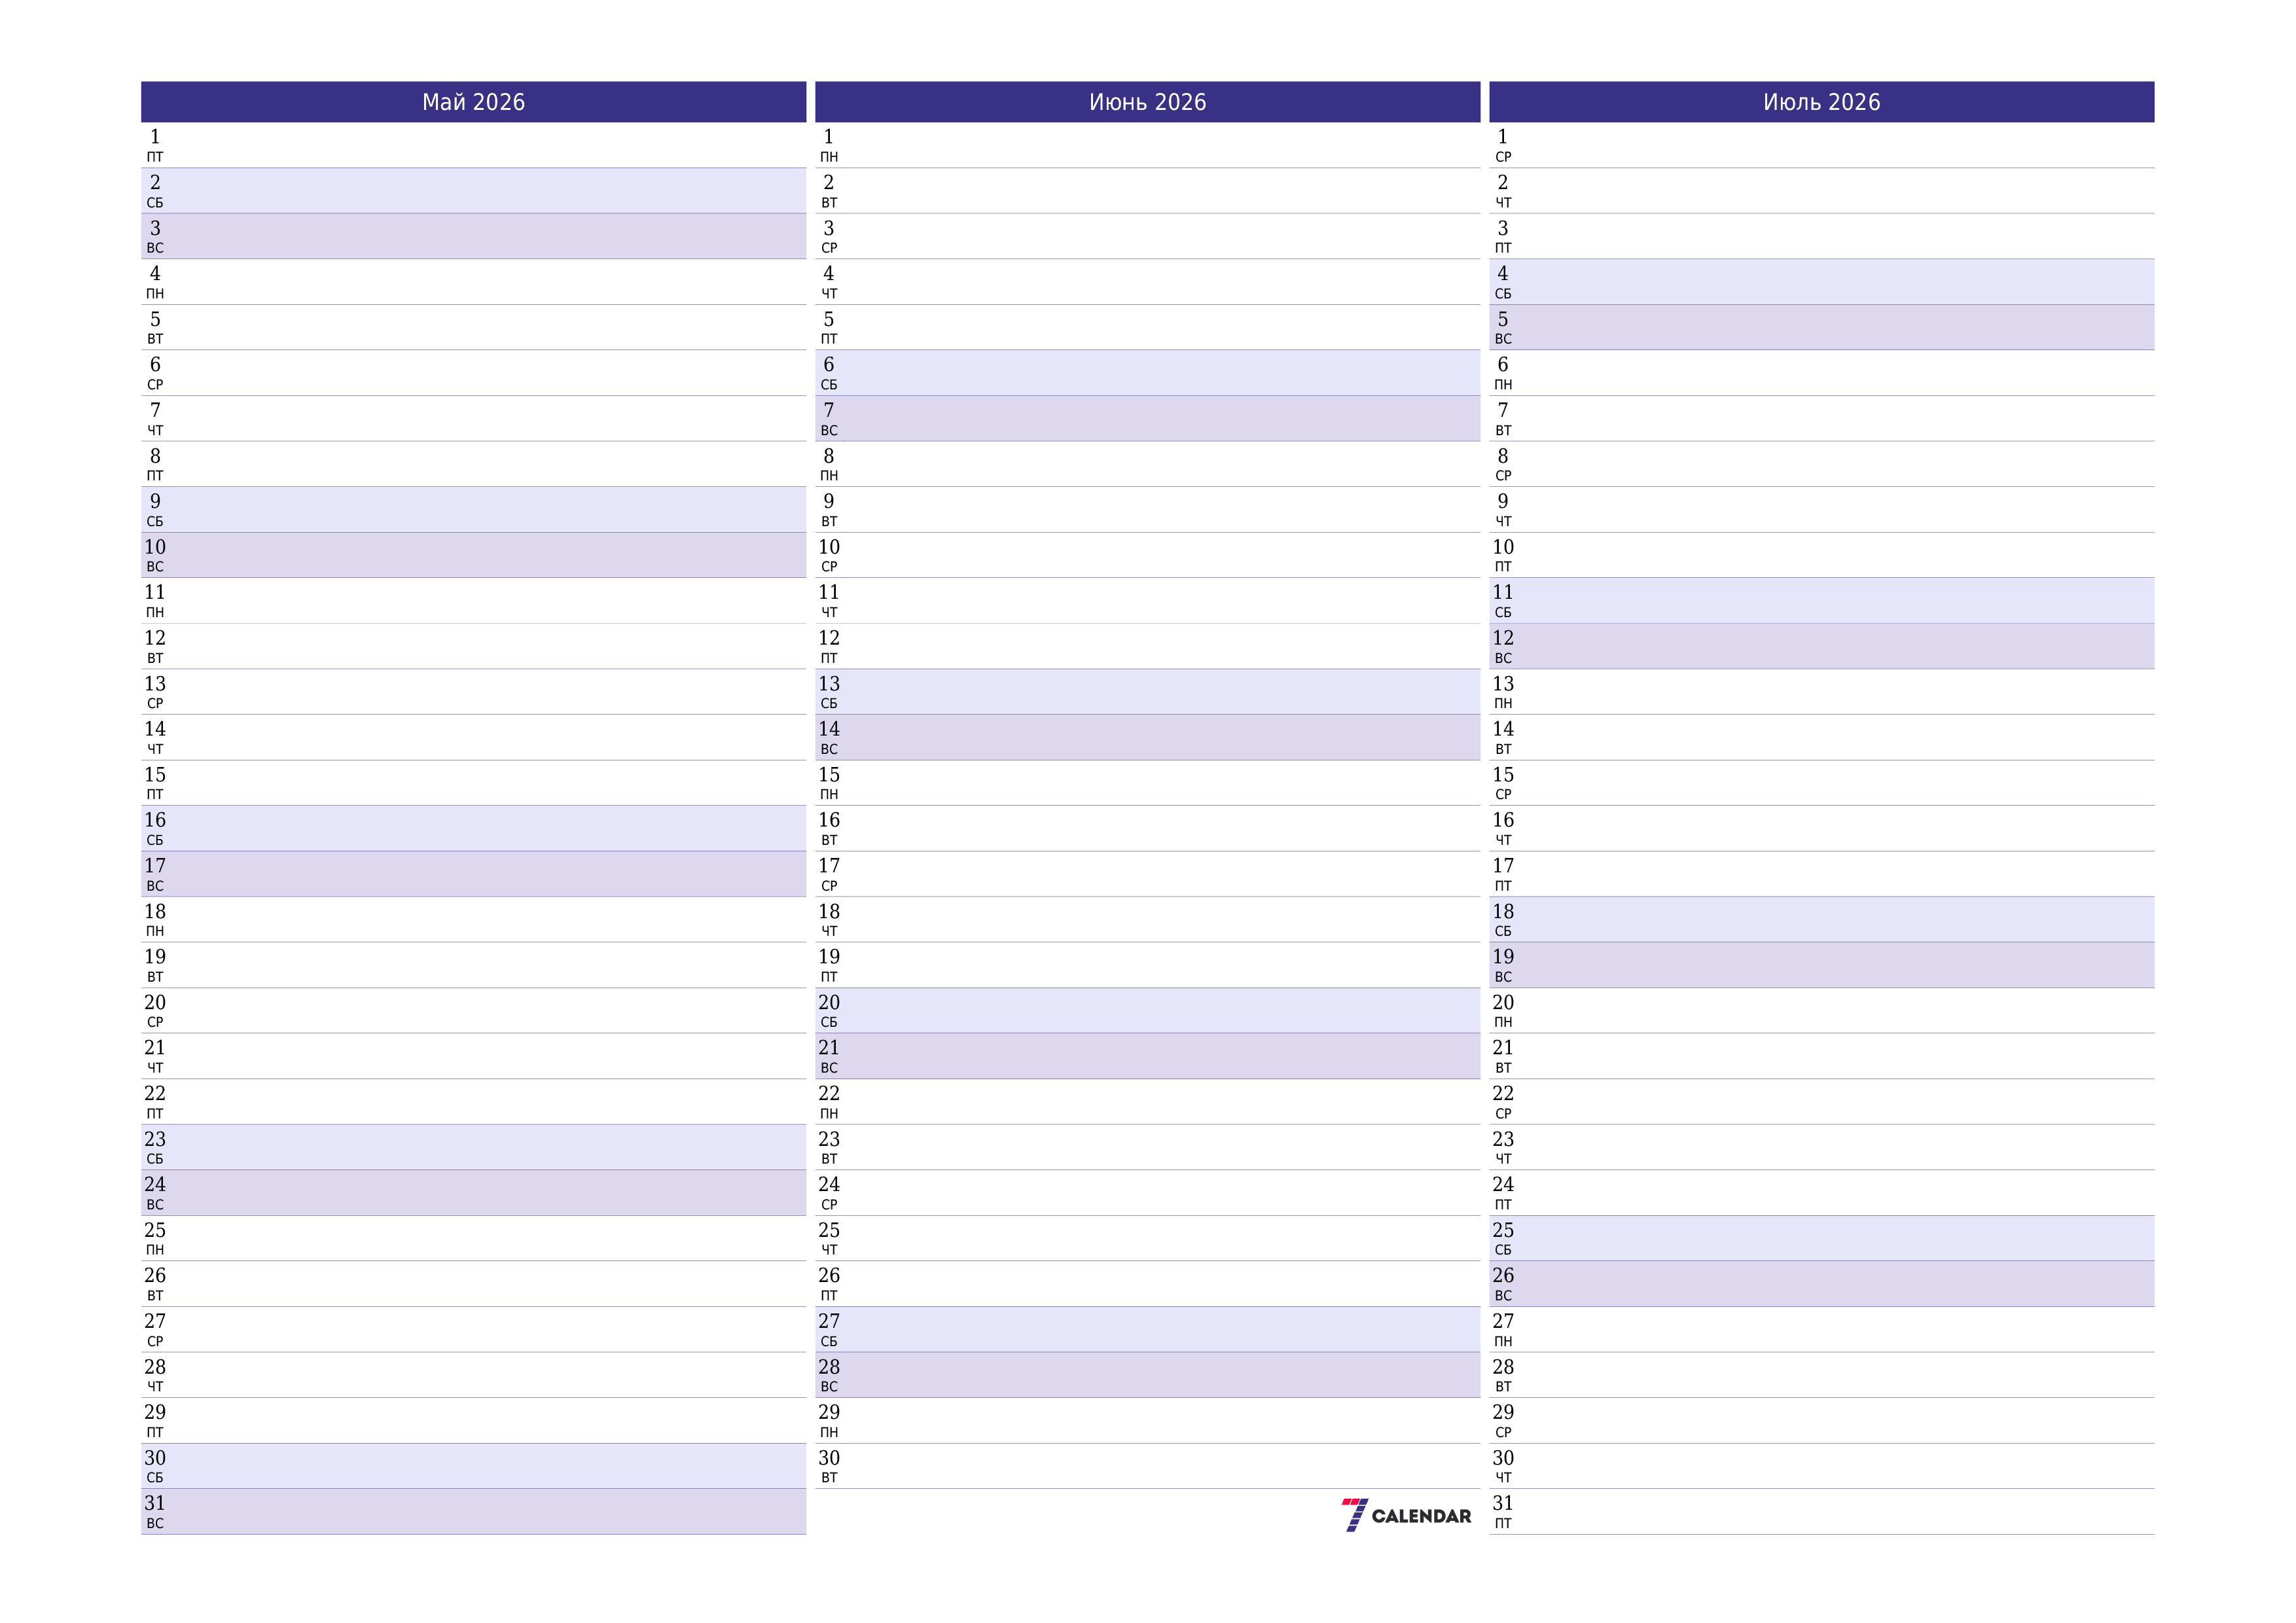 Пустой ежемесячный календарь-планер на месяц Май 2026